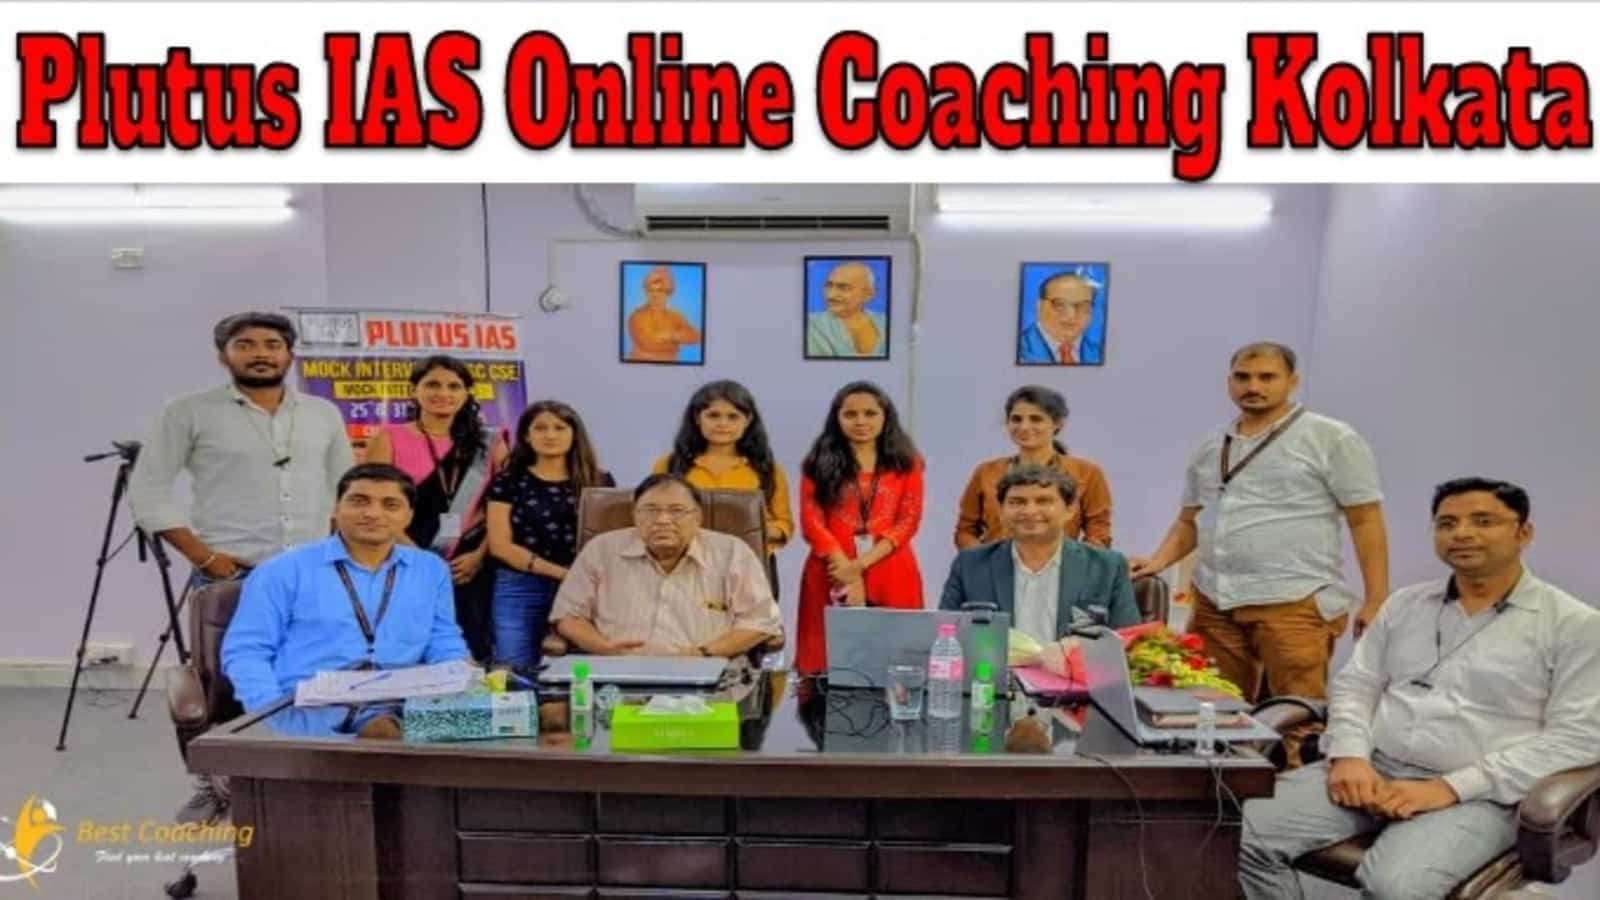 Plutus IAS Online Coaching Kolkata